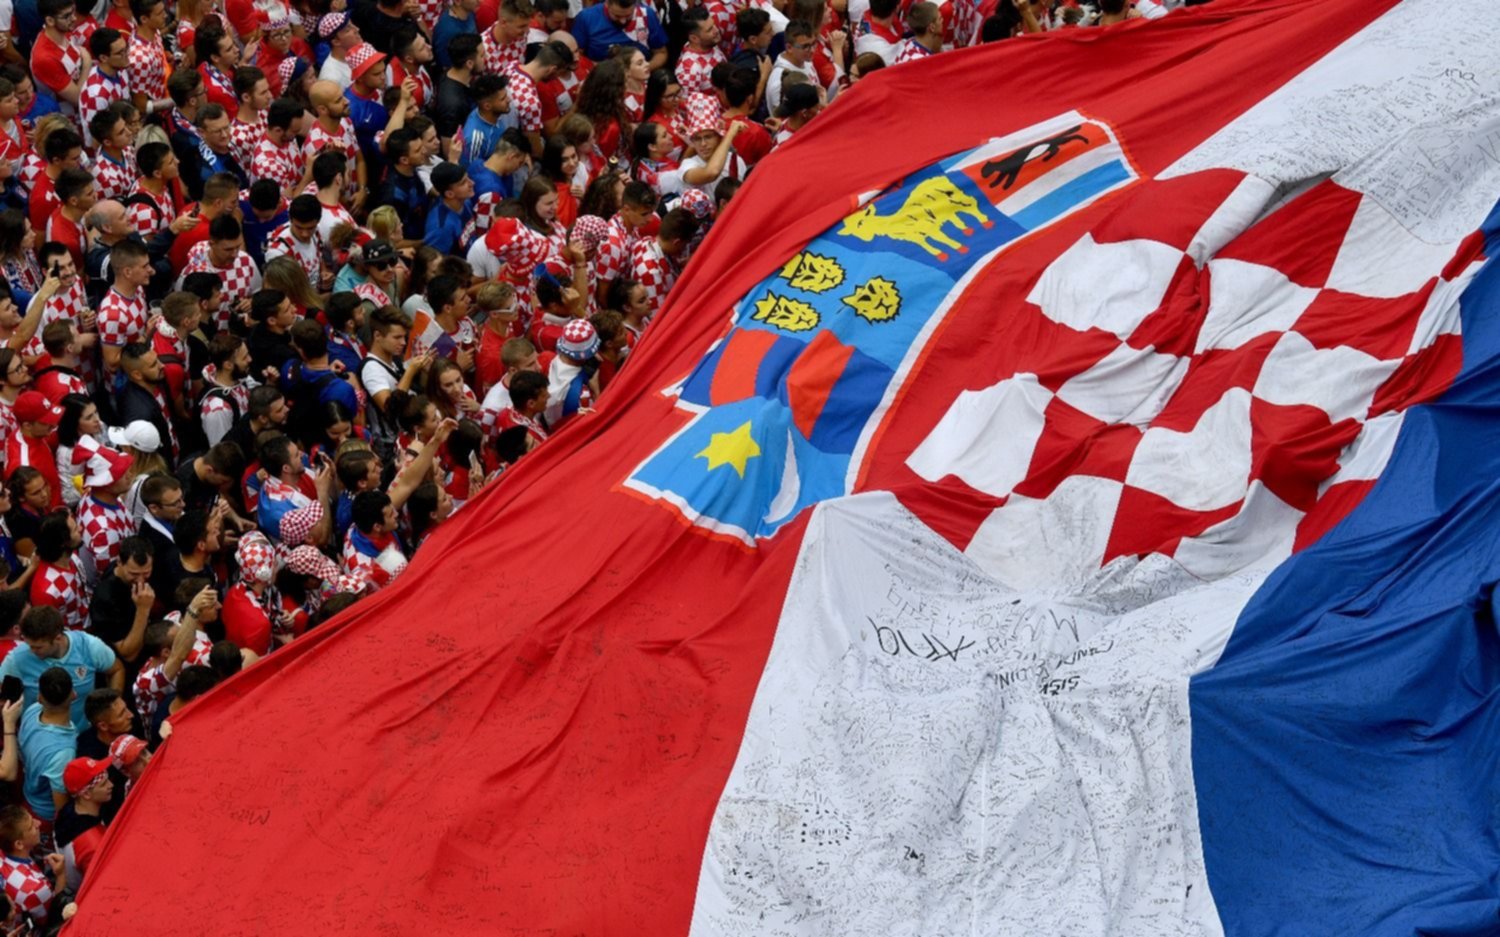 Los croatas desbordan de alegría y confianza